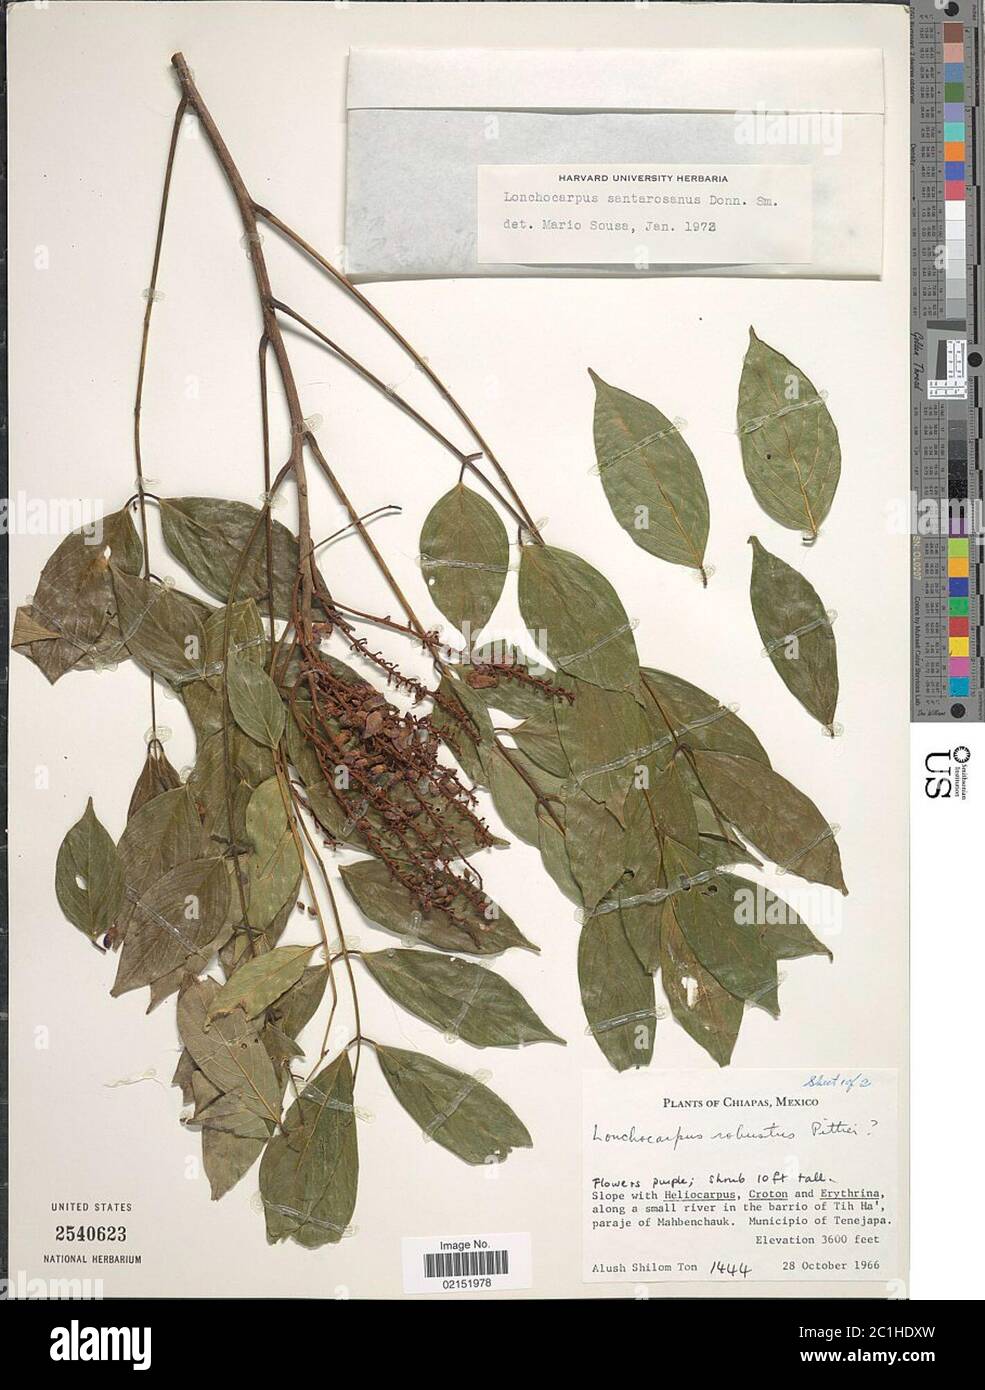 Lonchocarpus santarosanus Donn Sm Lonchocarpus santarosanus Donn Sm. Stock Photo